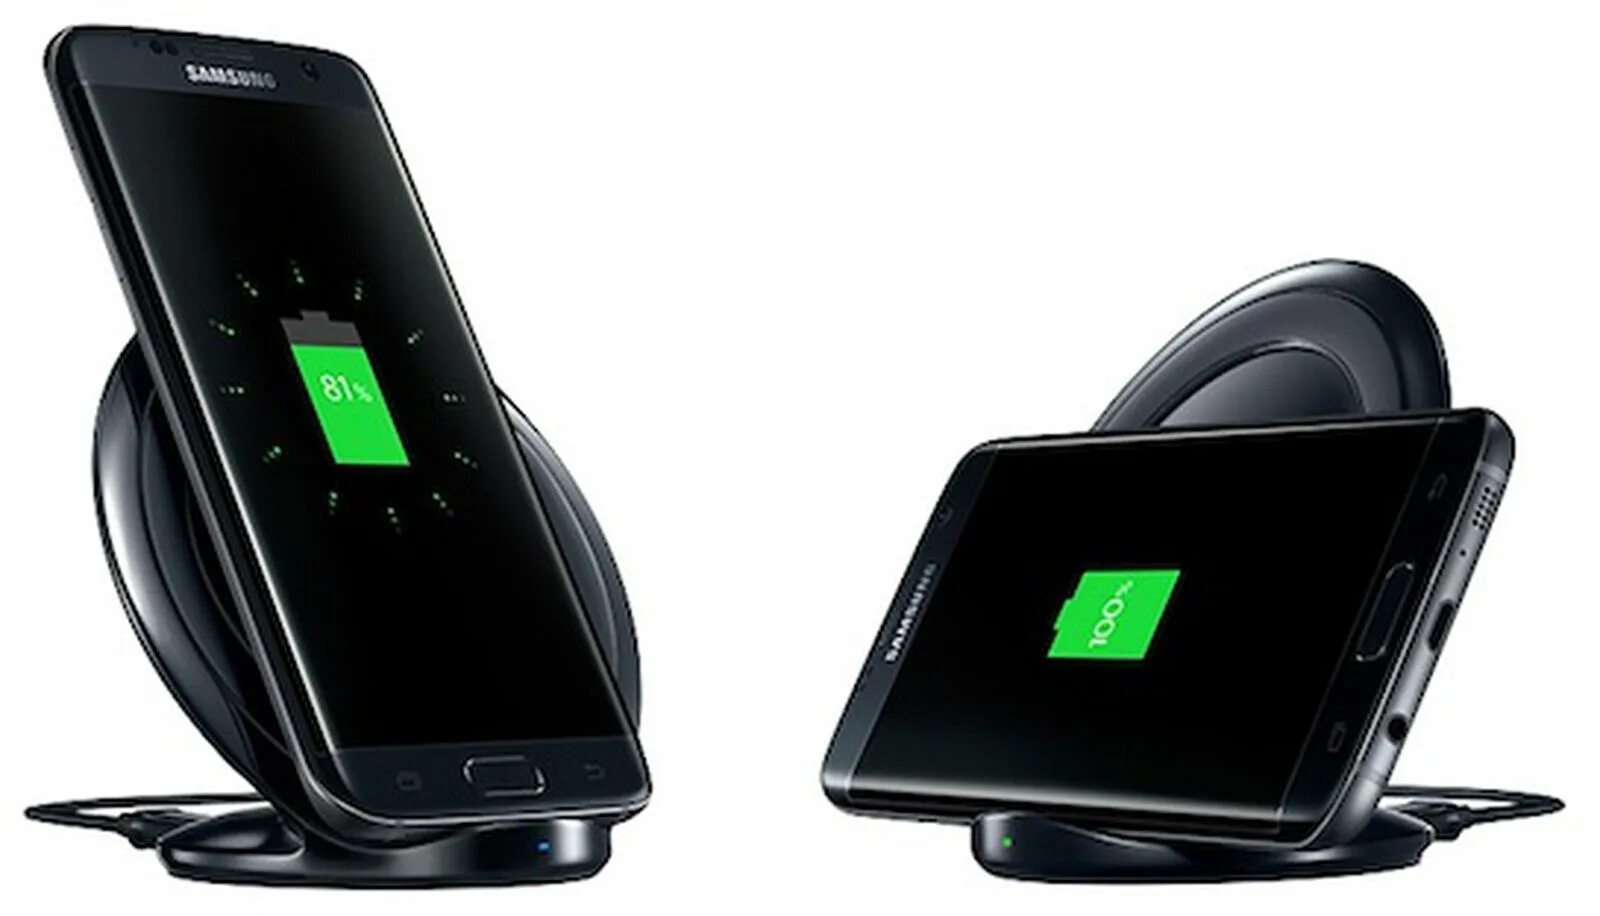 Беспроводная зарядка Samsung s8. Samsung Galaxy Note 10 беспроводная зарядка. Беспроводная зарядка Samsung Wireless Charger. Samsung Galaxy s8 беспроводная зарядка. Модели самсунг с беспроводной зарядкой